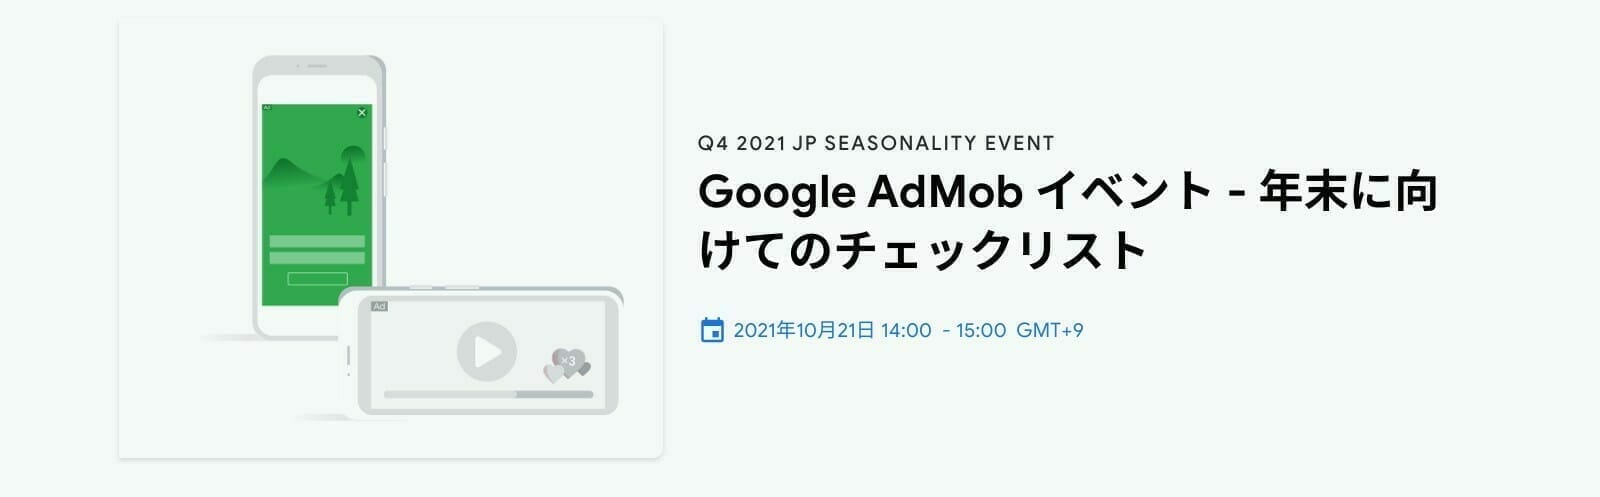 [Google AdMob] Google AdMob イベント - 年末に向けてのチェックリスト